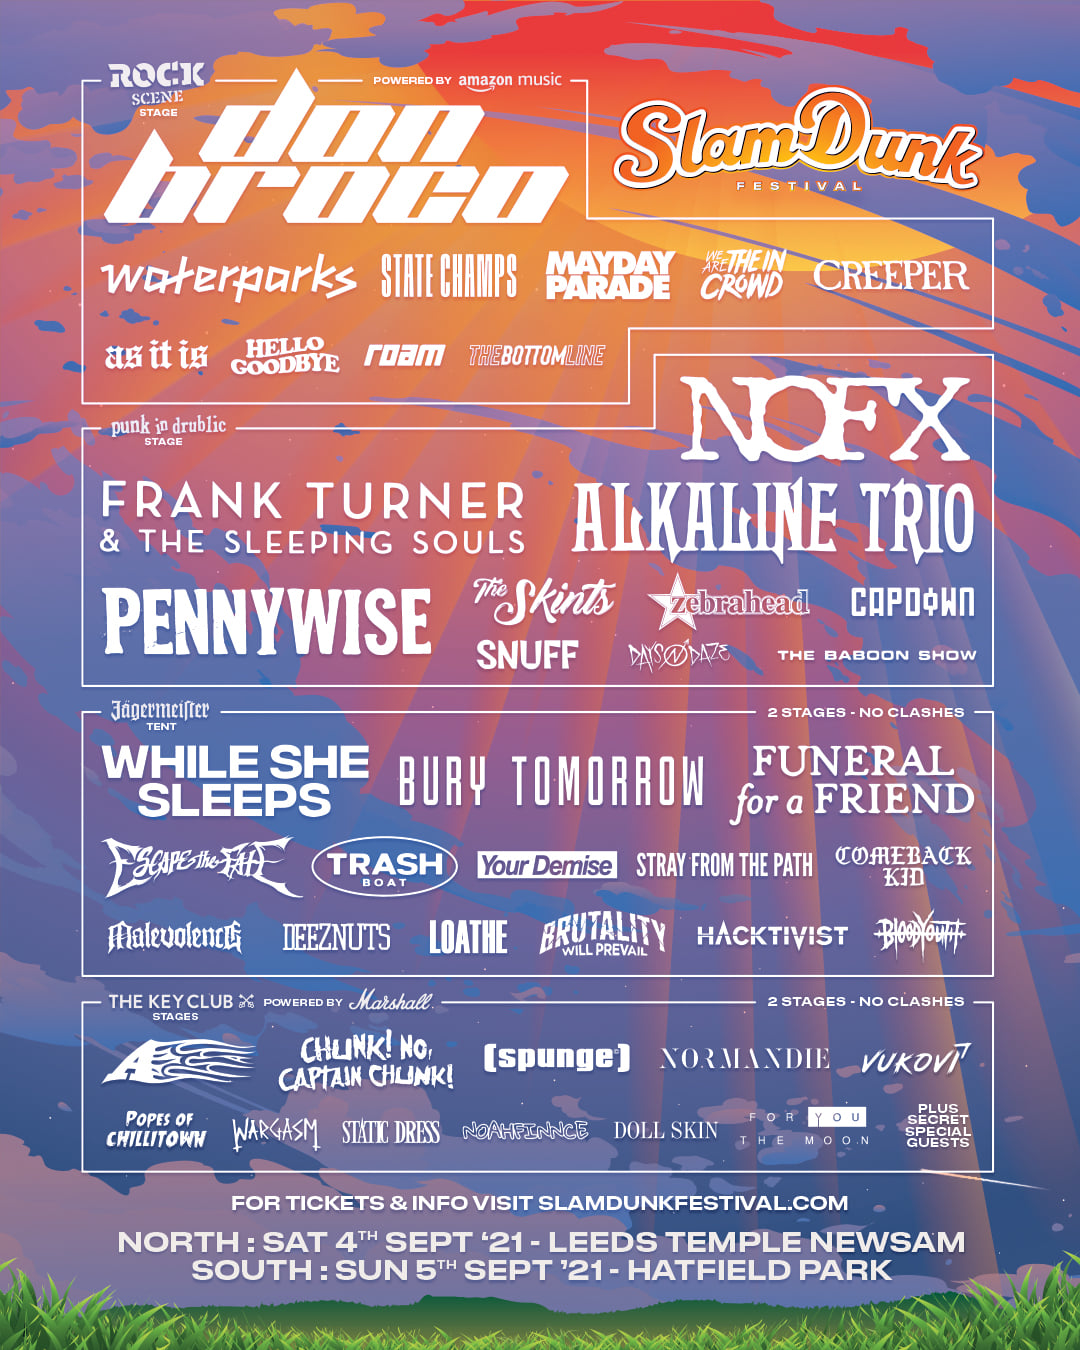 Slam Dunk Festival Announce LineUp Changes THE ROCK FIX